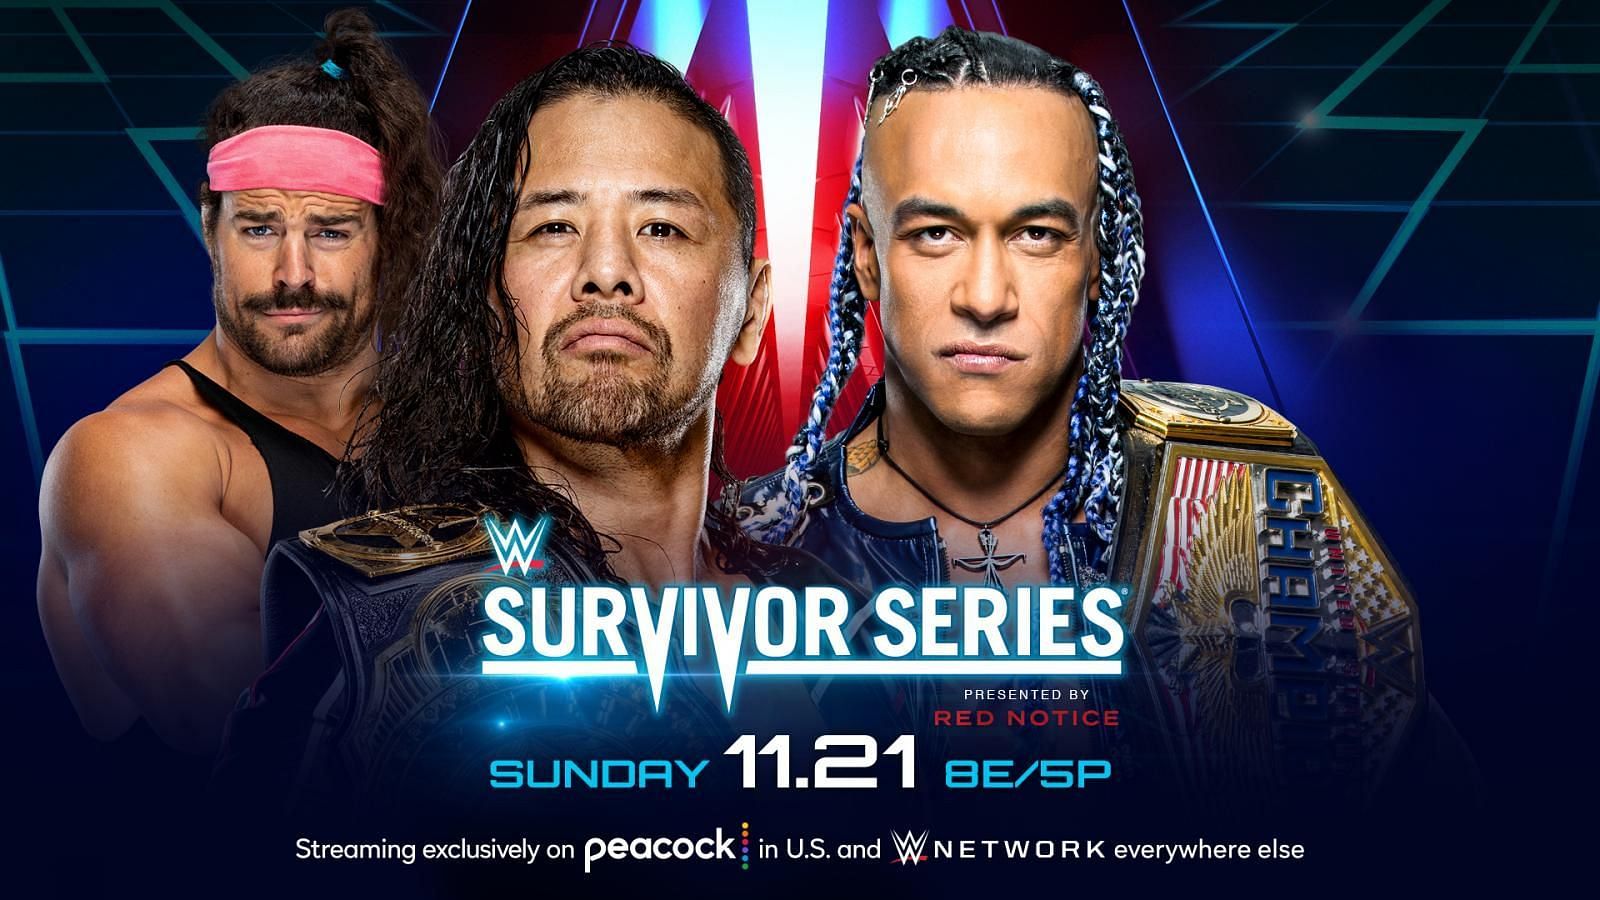 Survivor Series 2021 5 potential finishes for Shinsuke Nakamura vs